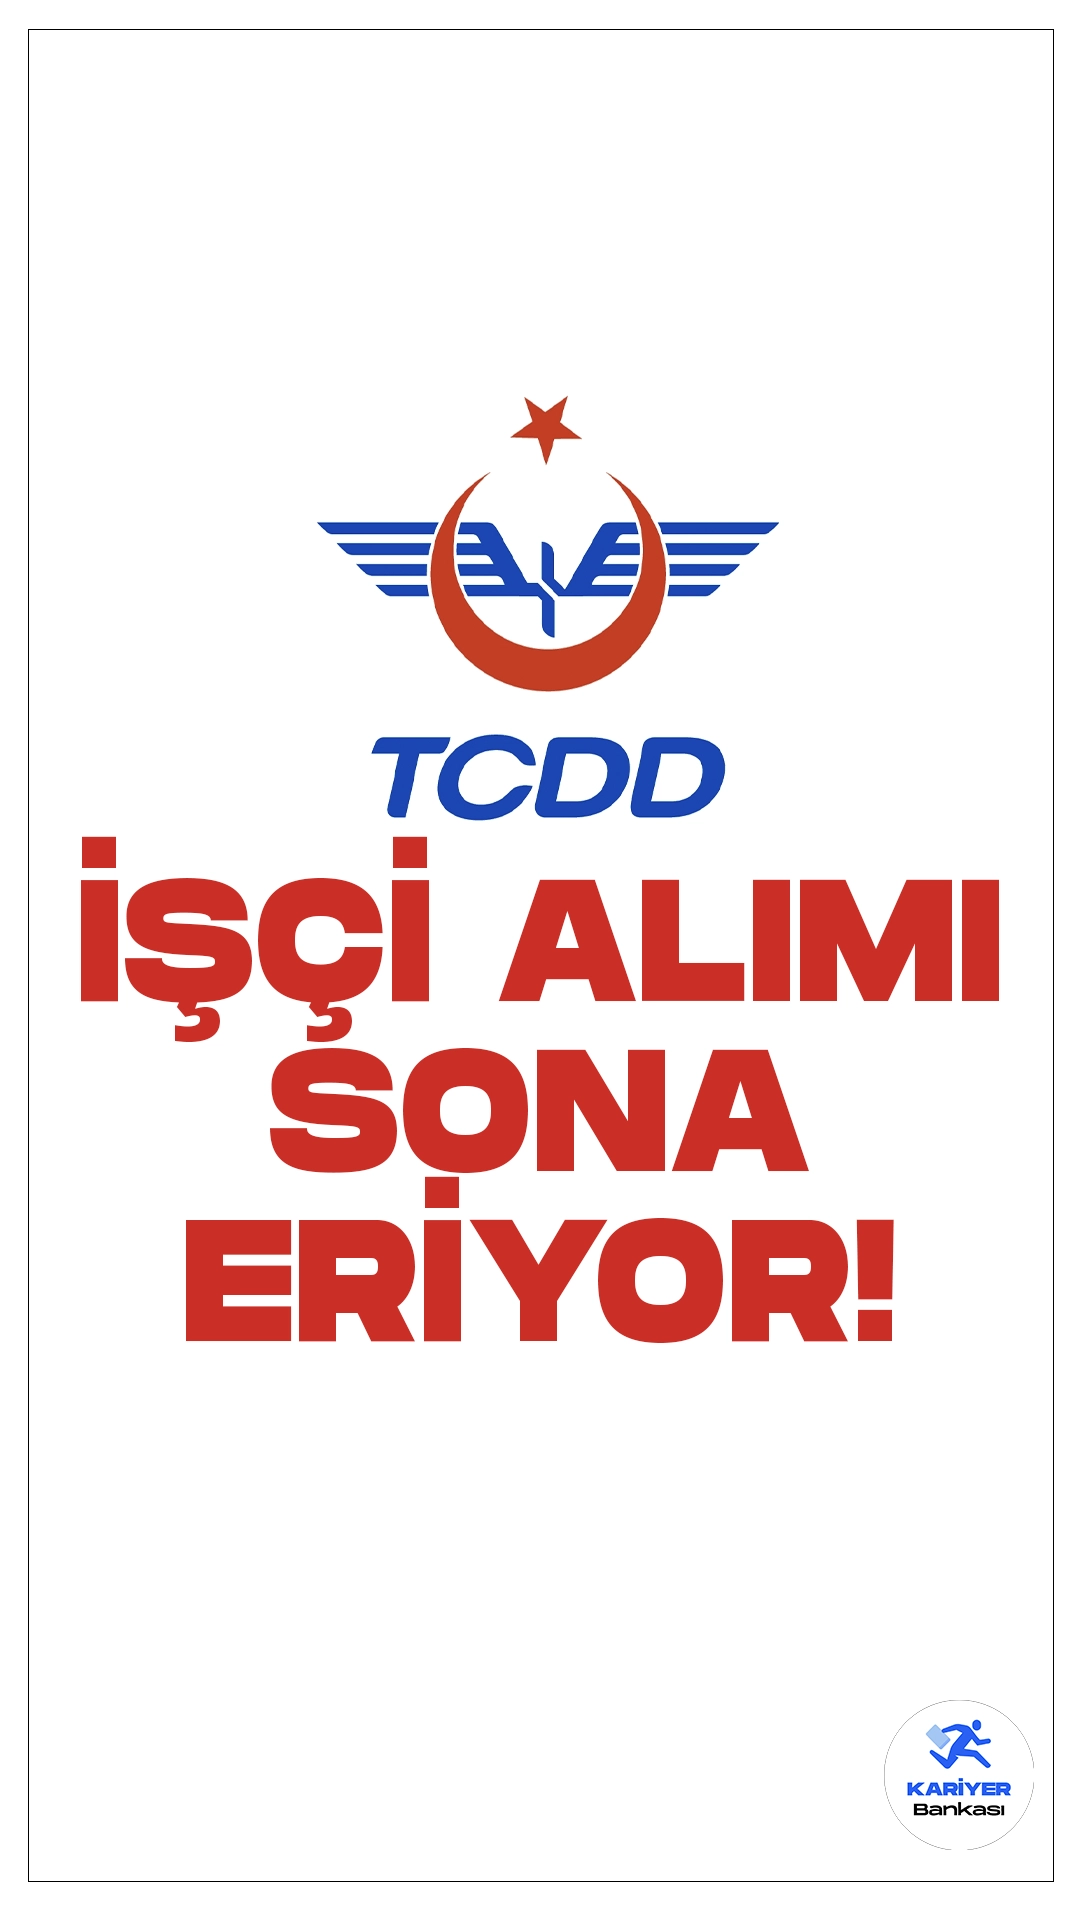 TCDD 95 İşçi Alımı Başvurularında Son Saatler.T.C. Devlet Demiryolları İşletmesi Genel Müdürlüğü (TCDD) işçi alımı başvurularında son saatlere girildi.Cumhurbaşkanlığı SBB'de yayımlanan duyuruda, TCDD’ye sürekli işçi alımı yapılacağı aktarıldı.Başvuru işlemleri bugün(23 Şubat) sona eriyor. Başvuru yapacak adayların belirtilen şartları taşıması gerekmektedir.İşte şartlar ve başvuru bilgileri..